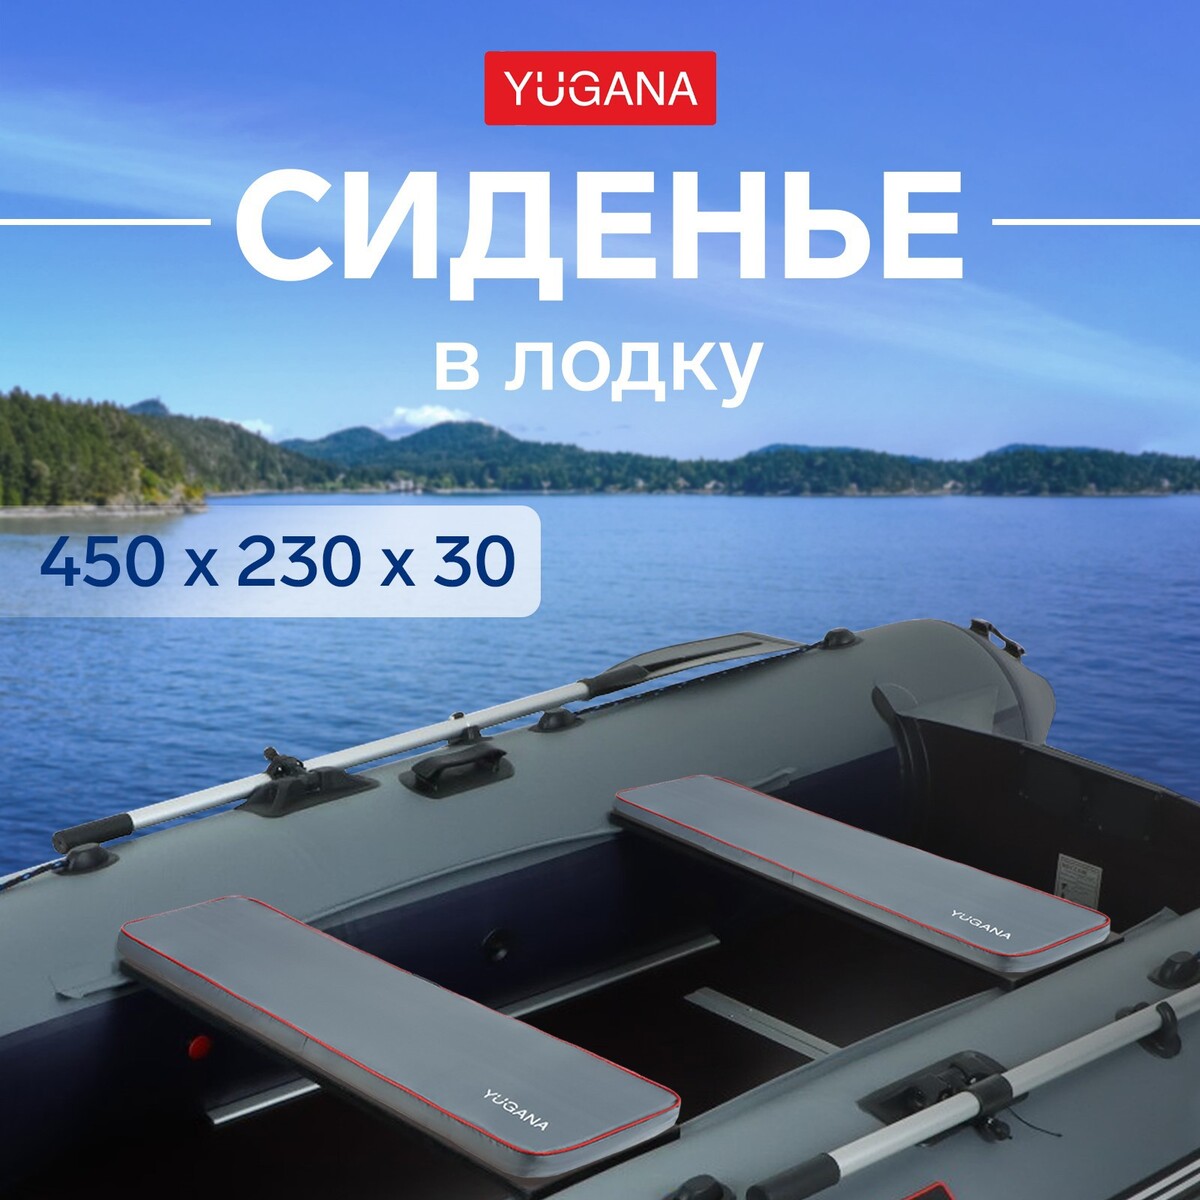 Сиденье в лодку yugana, цвет серый, 450 x 230 x 30 мм сиденье для унитаза с крышкой 43×37 см мягкое серый рисунок микс